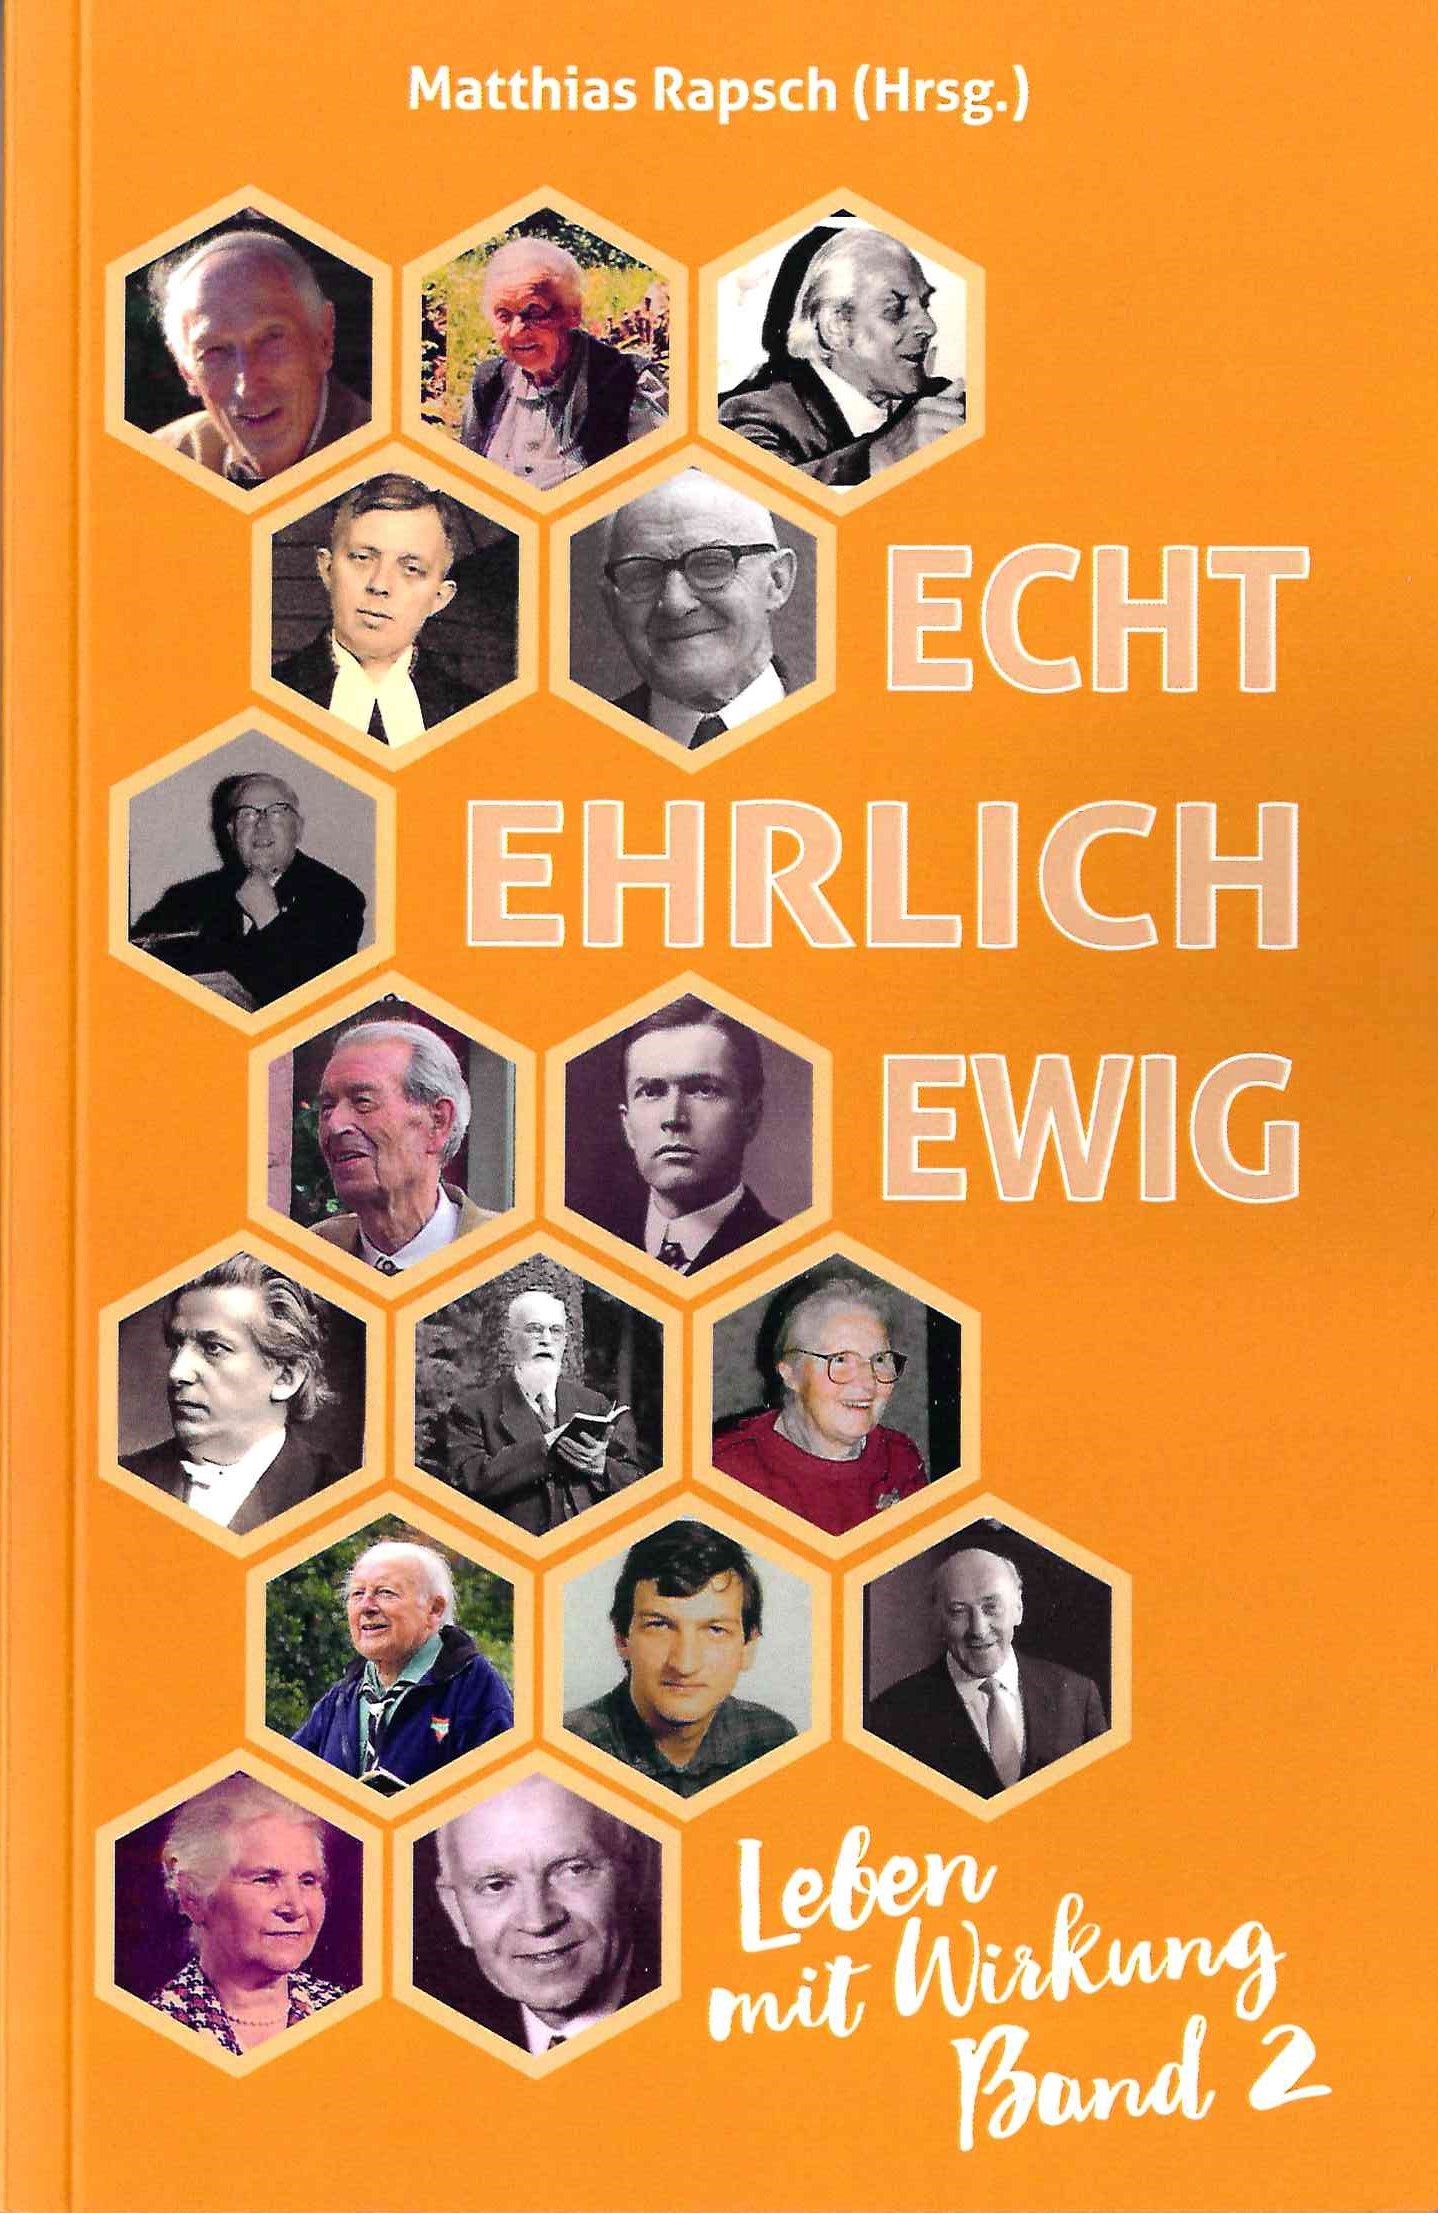 Matthias Rapsch (Hrsg.): Echt Ehrlich Ewig, Leben mit Wirkung Band 2